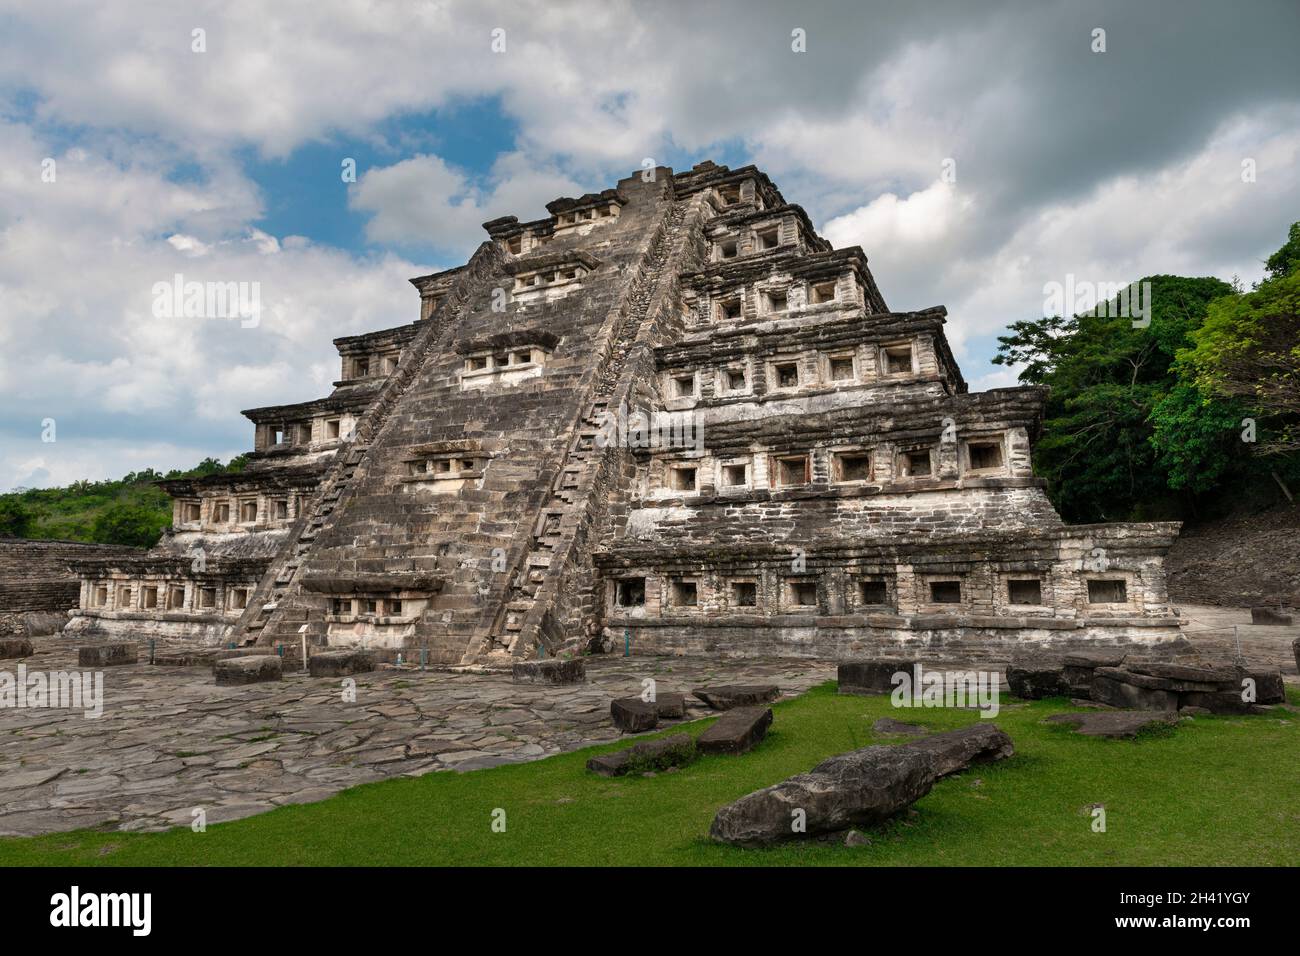 La pirámide de los nichos en el yacimiento arqueológico DE EL Tajin, en Papantla, Veracruz, México. Foto de stock